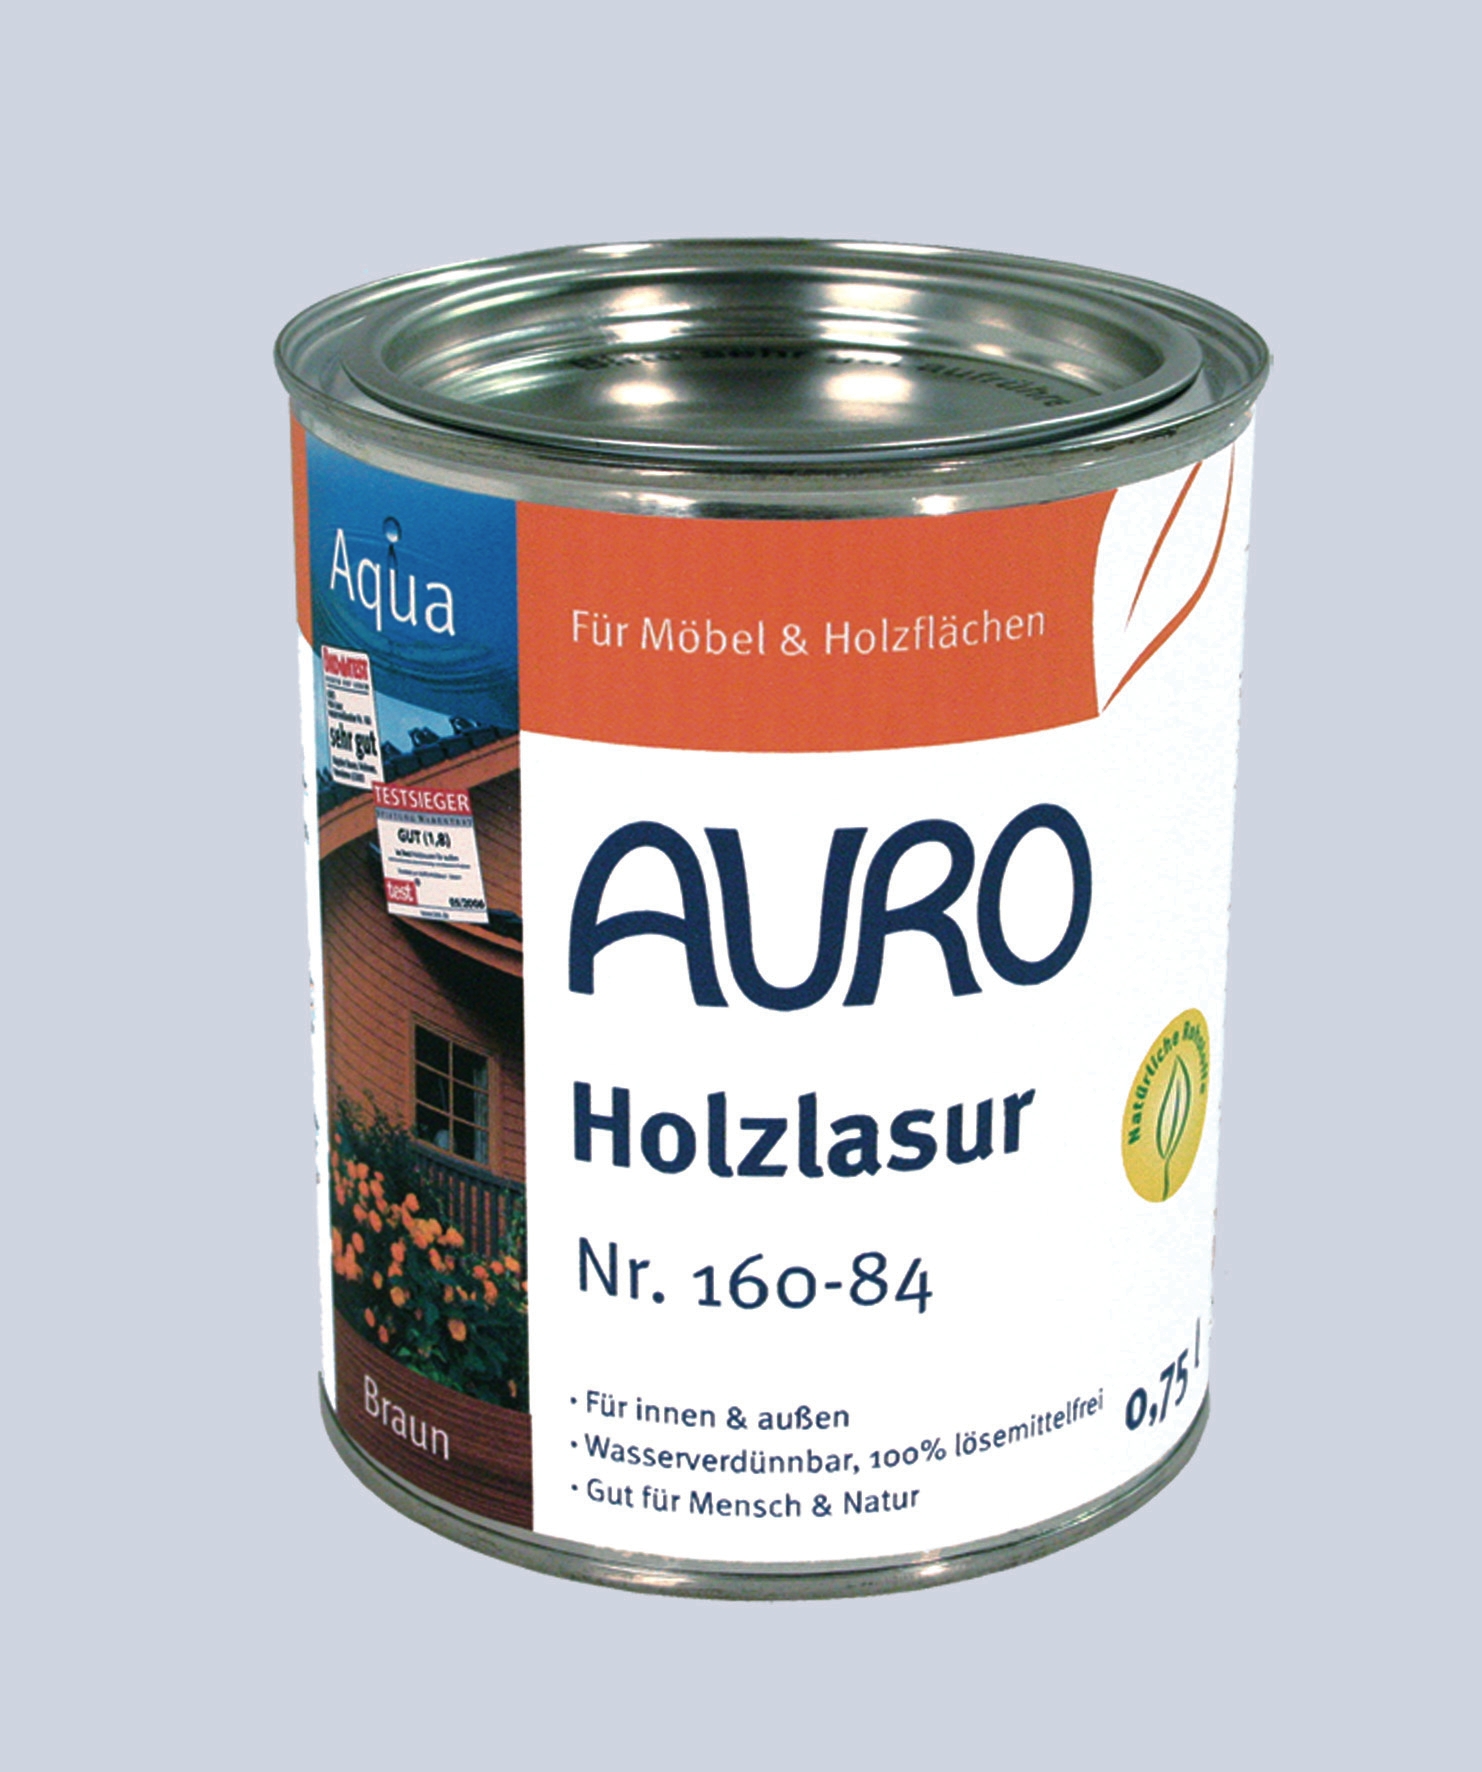 AURO Holzlasur "Aqua"